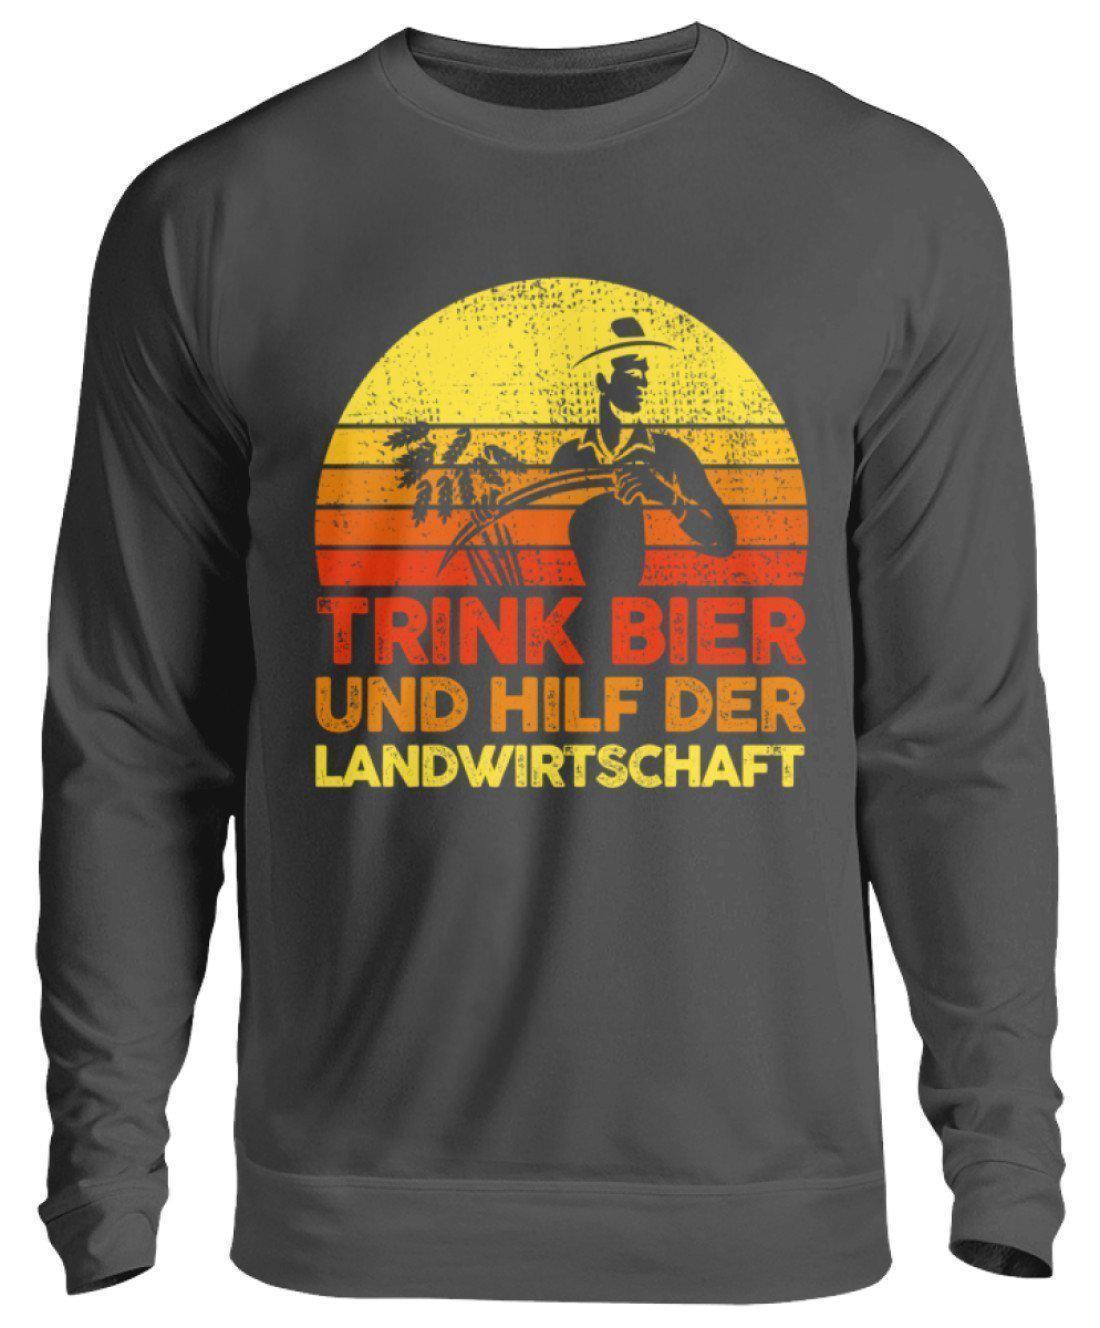 Trink Bier hilf Landwirtschaft Retro · Unisex Sweatshirt Pullover-Unisex Sweatshirt-Storm Grey (Solid)-S-Agrarstarz